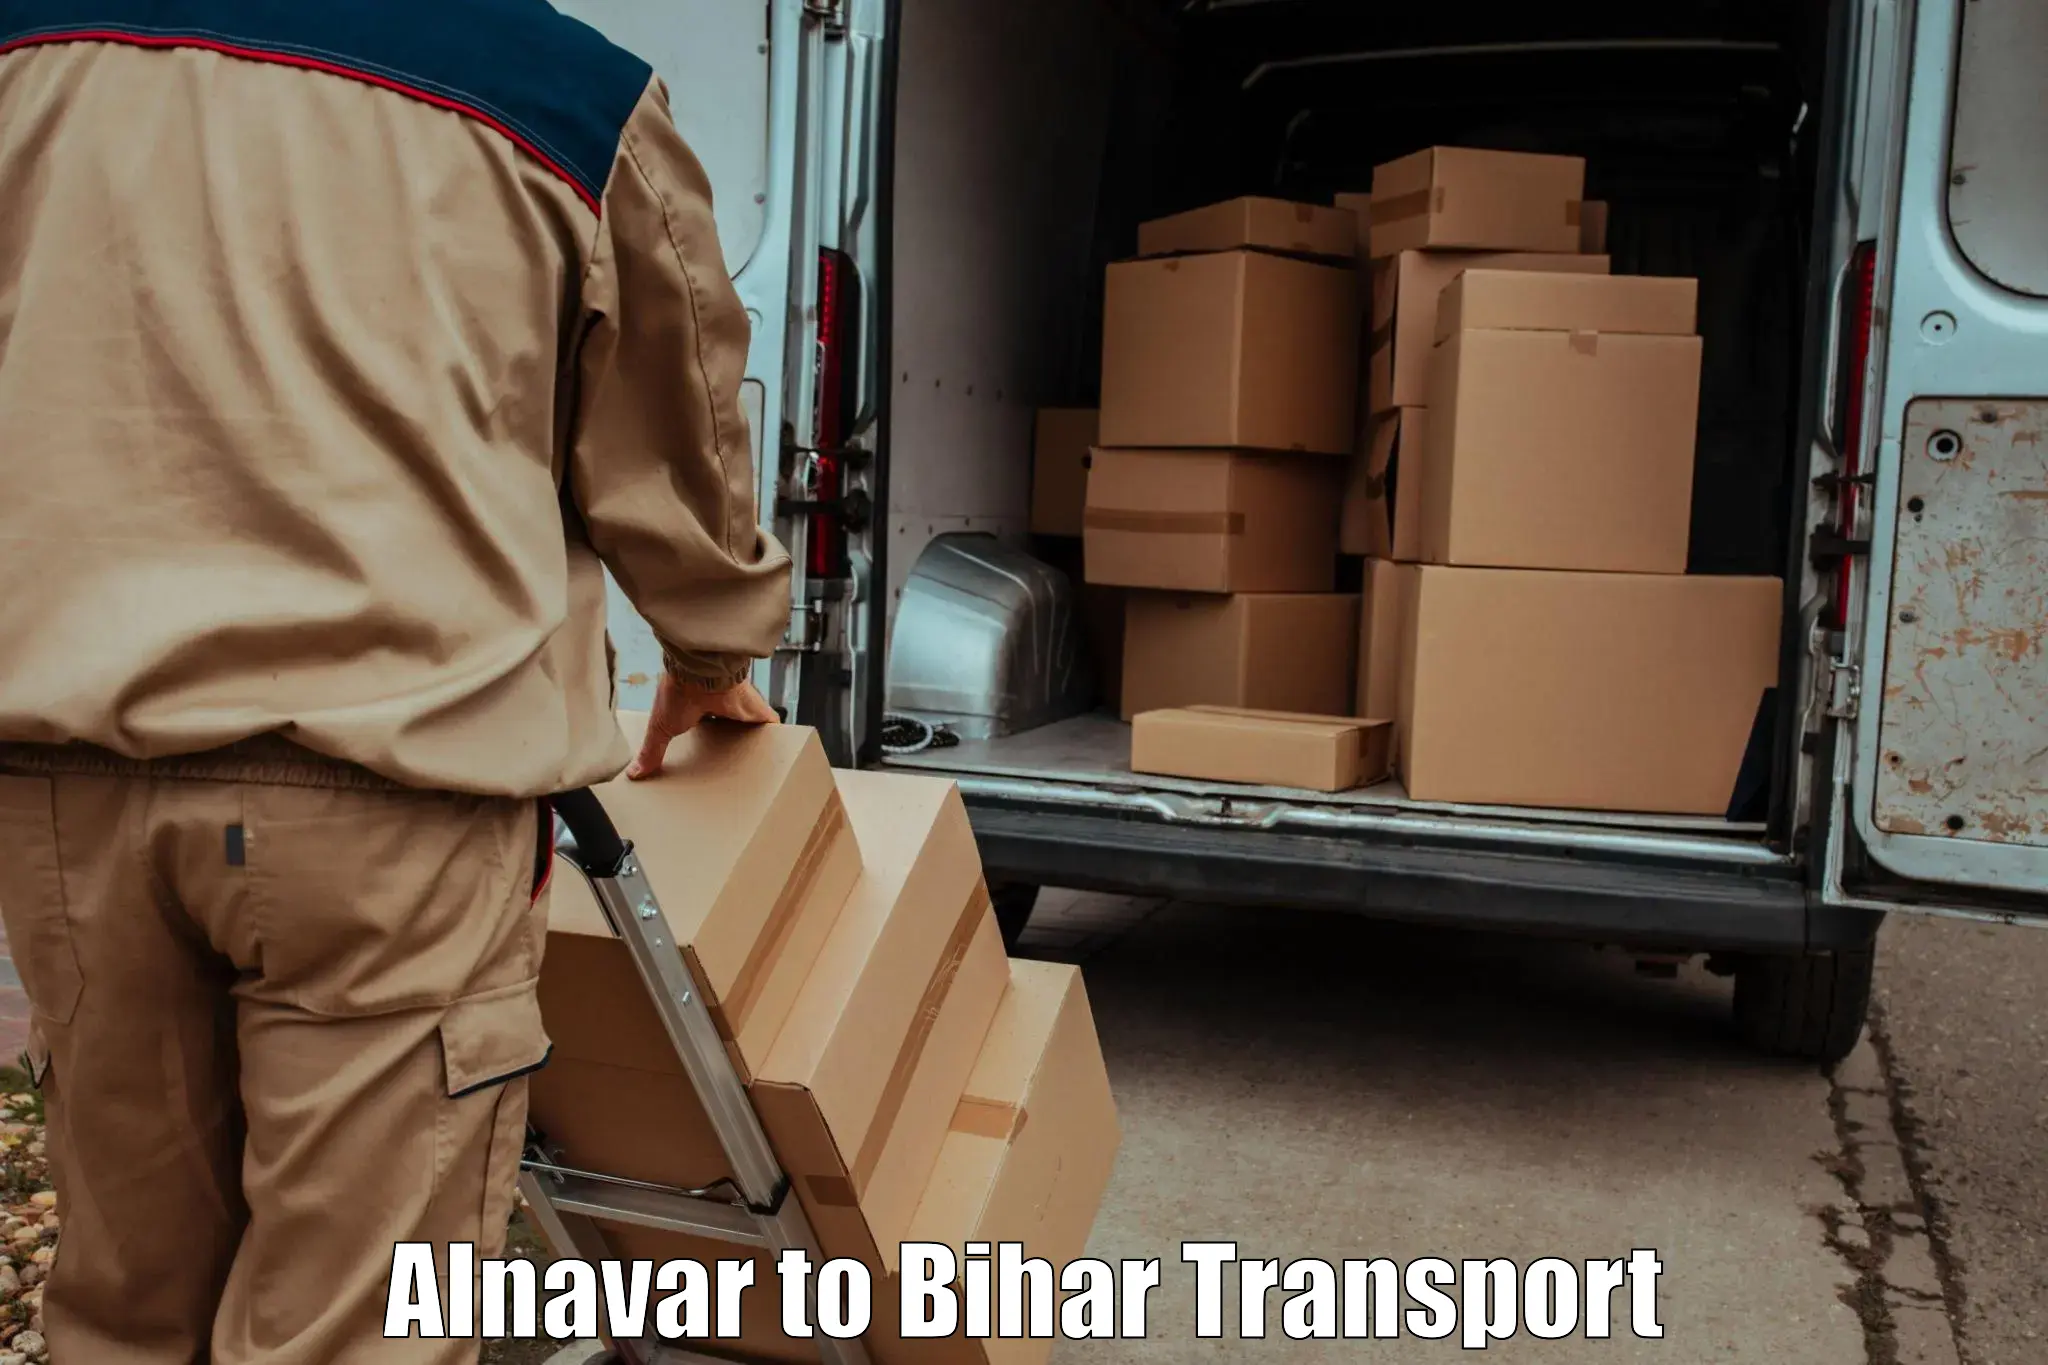 Daily transport service Alnavar to Jaynagar